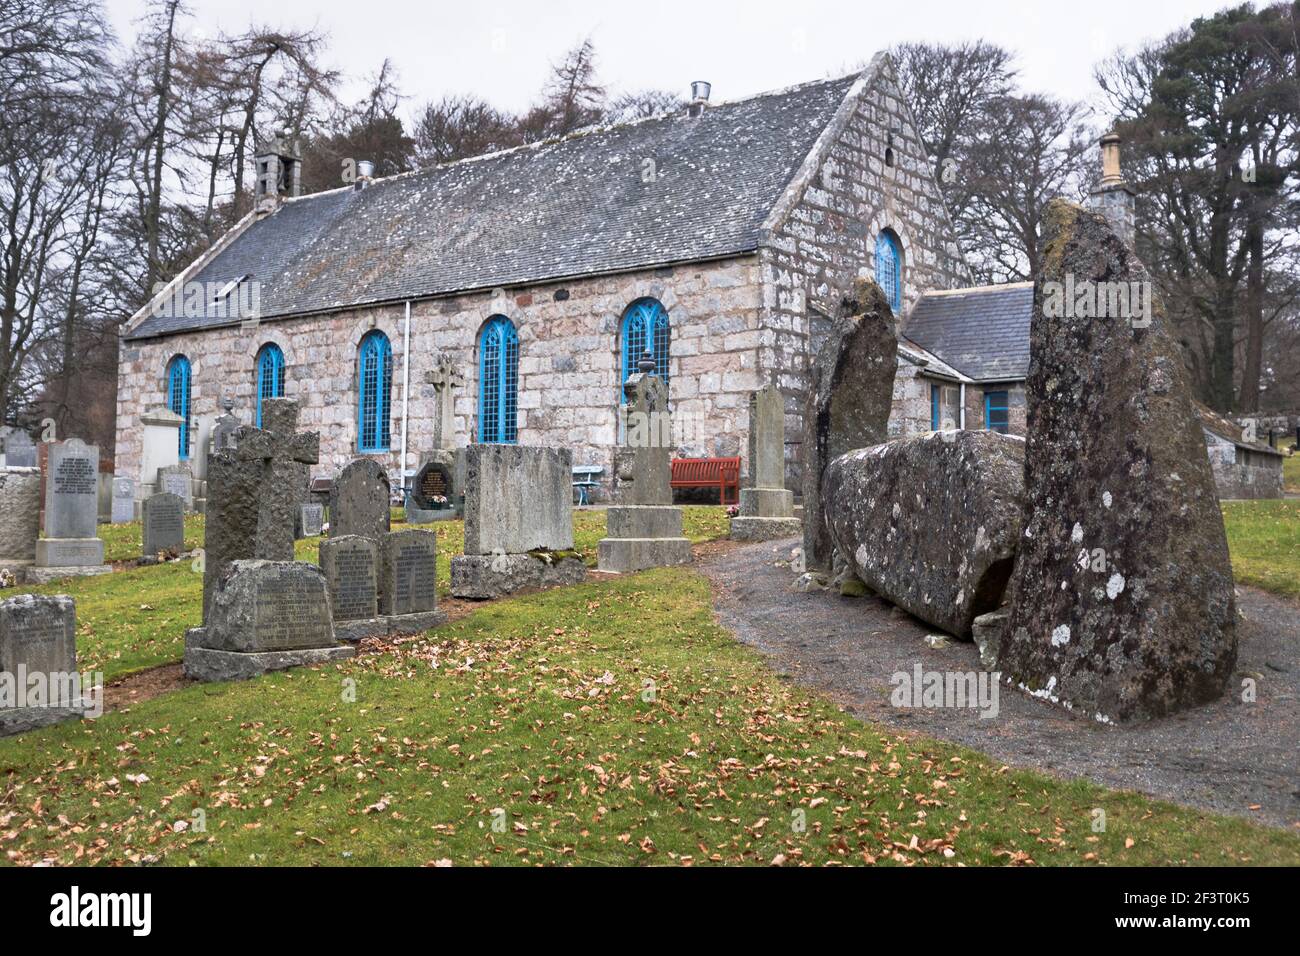 dh ECHT UND MIDMAR KIRK ABERDEENSHIRE Church of Scotland ländlichen Schottische Kirchen auf dem Friedhof mit einem bronzezeitigen Liegeergel-Steinkreis Gebäude in großbritannien Stockfoto